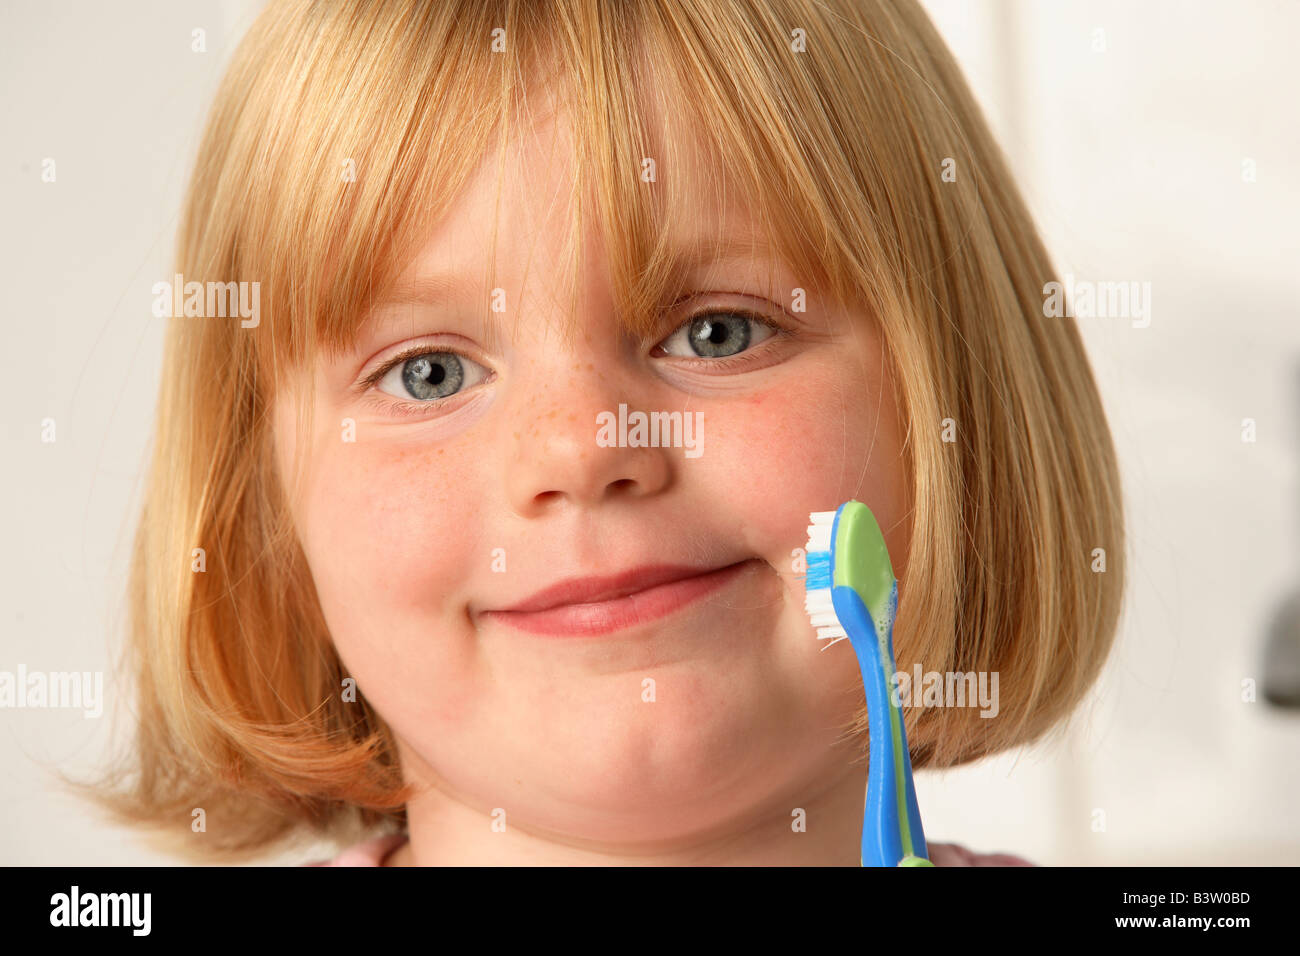 Une jeune fille tenant une brosse à dents Banque D'Images